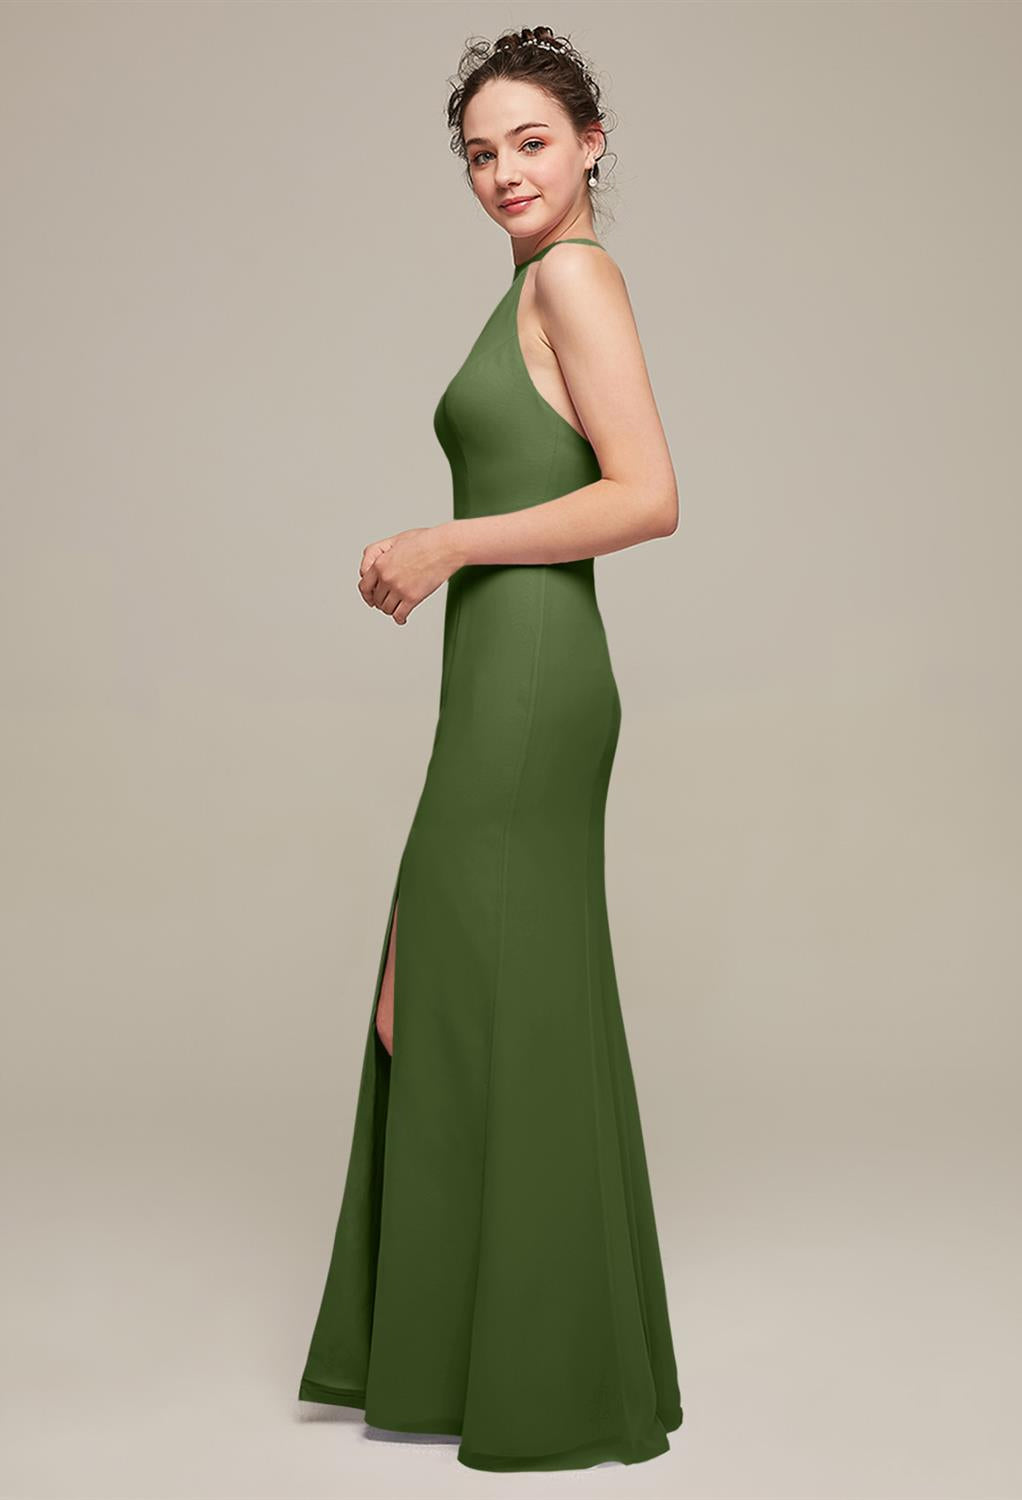 Ailsa - Chiffon Bridesmaid Dress - Off The Rack by Bergamot Bridal available at bridal shops London.